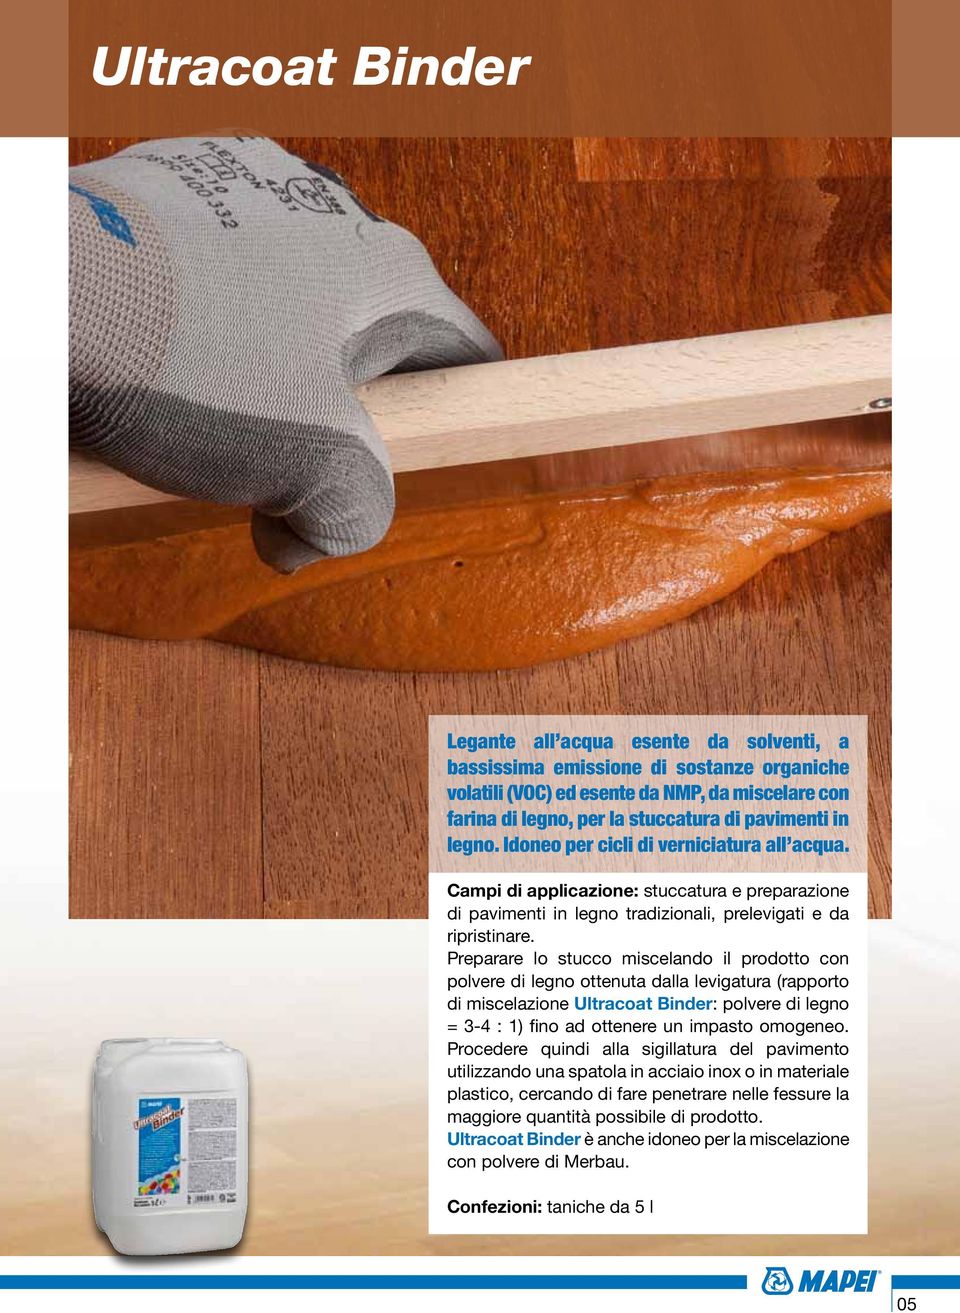 Preparare lo stucco miscelando il prodotto con polvere di legno ottenuta dalla levigatura (rapporto di miscelazione Ultracoat Binder: polvere di legno = 3-4 : 1) fino ad ottenere un impasto omogeneo.